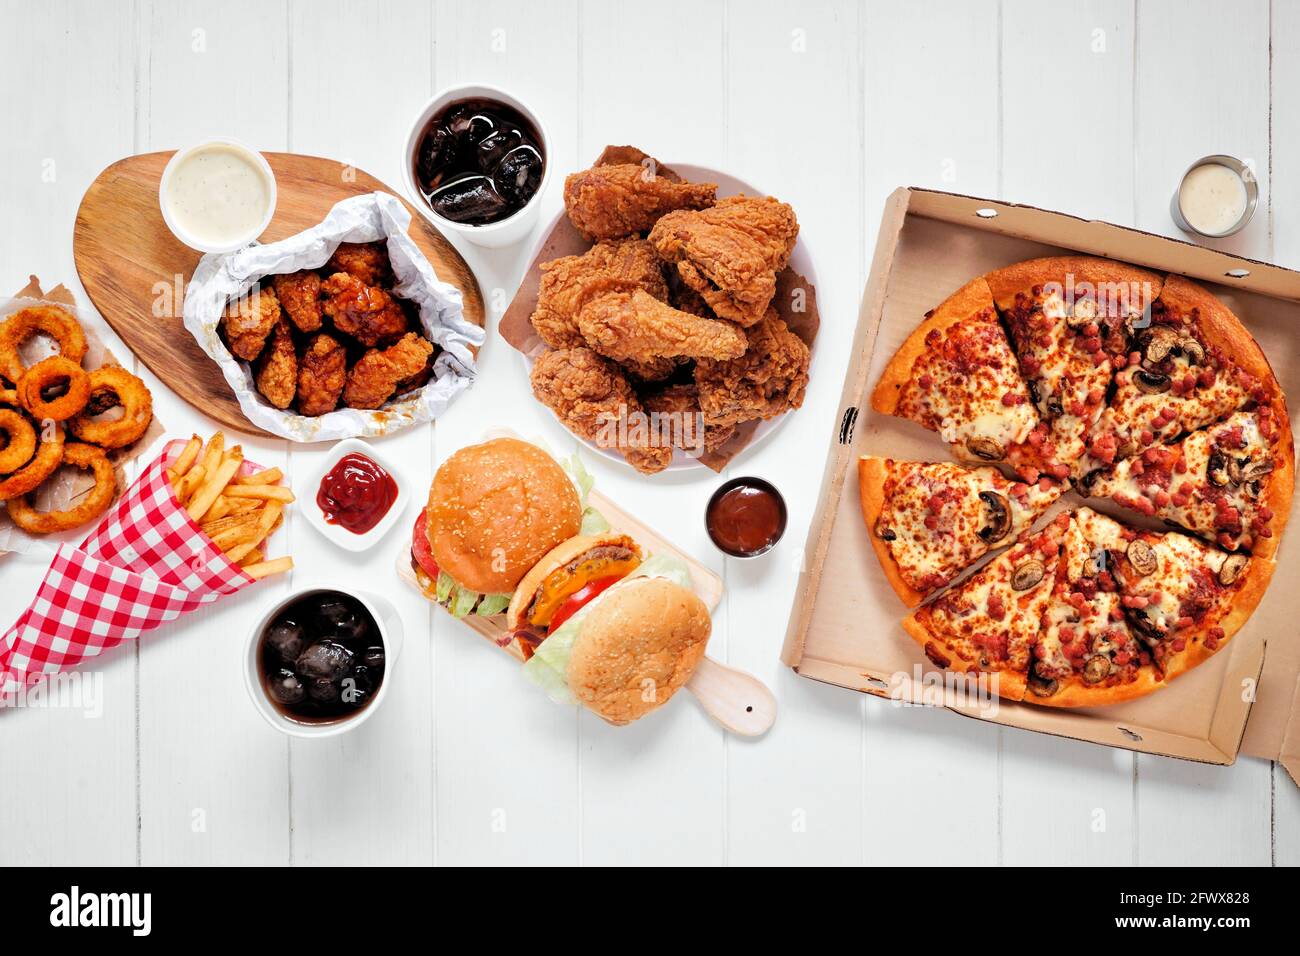 Tischszene mit großer Auswahl an Take-Out- und Fast-Food-Gerichten. Hamburger, Pizza, gebratenes Huhn und Beilagen. Draufsicht auf weißem Holzhintergrund. Stockfoto